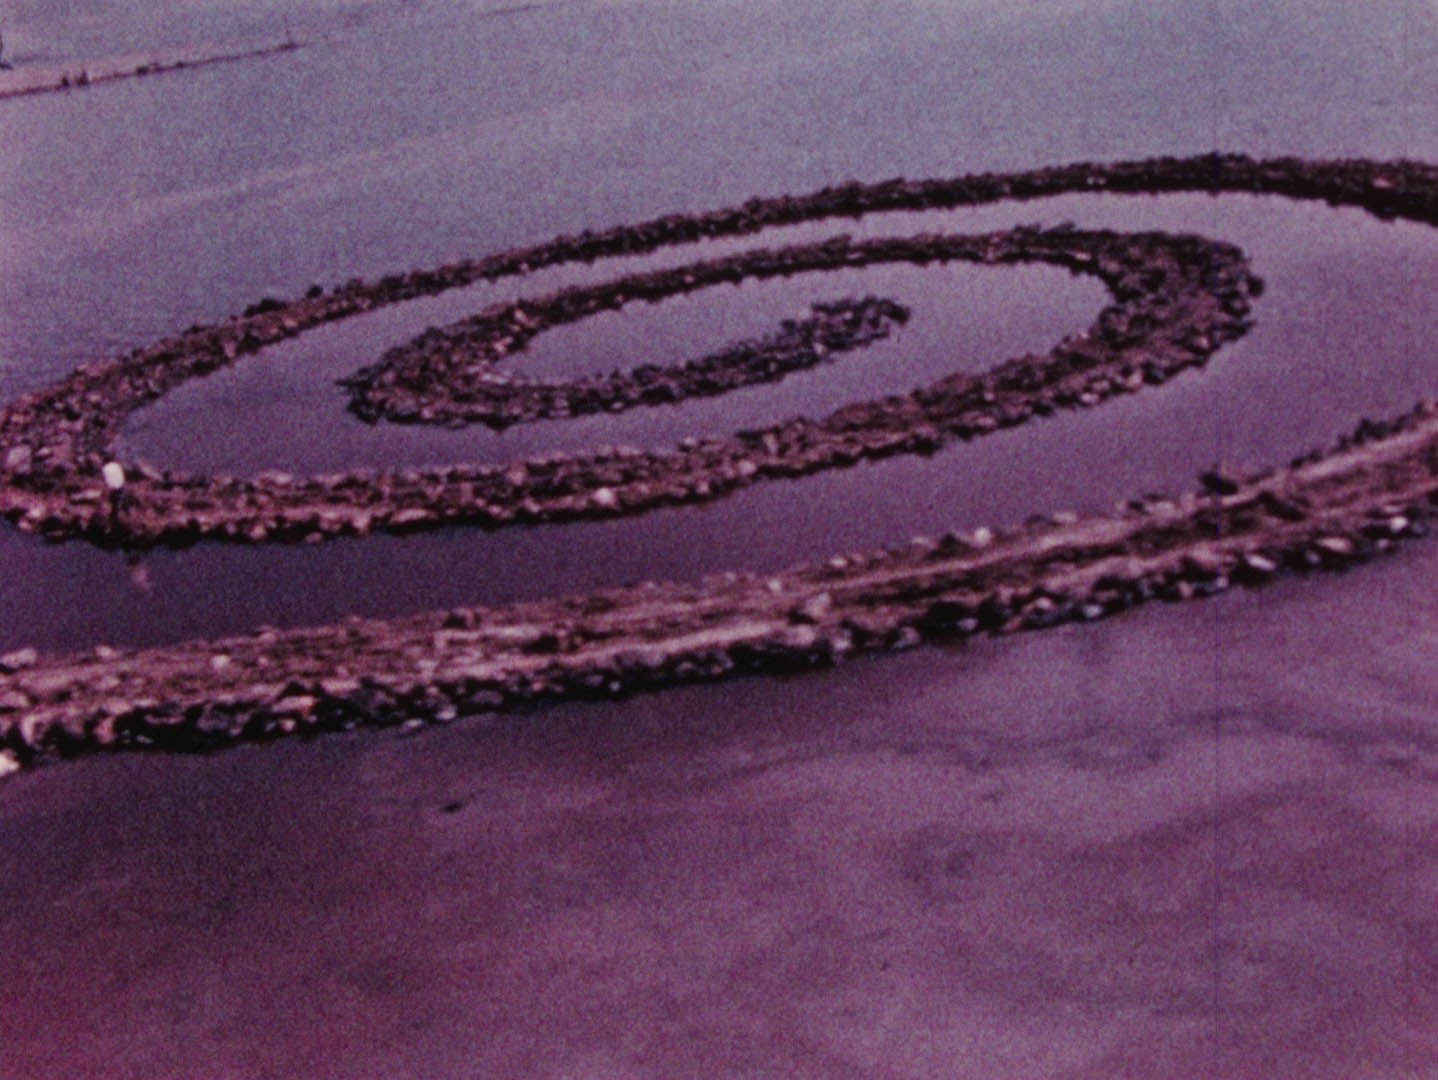 Spiral jetty, Robert Smithson (1938 – 1973).